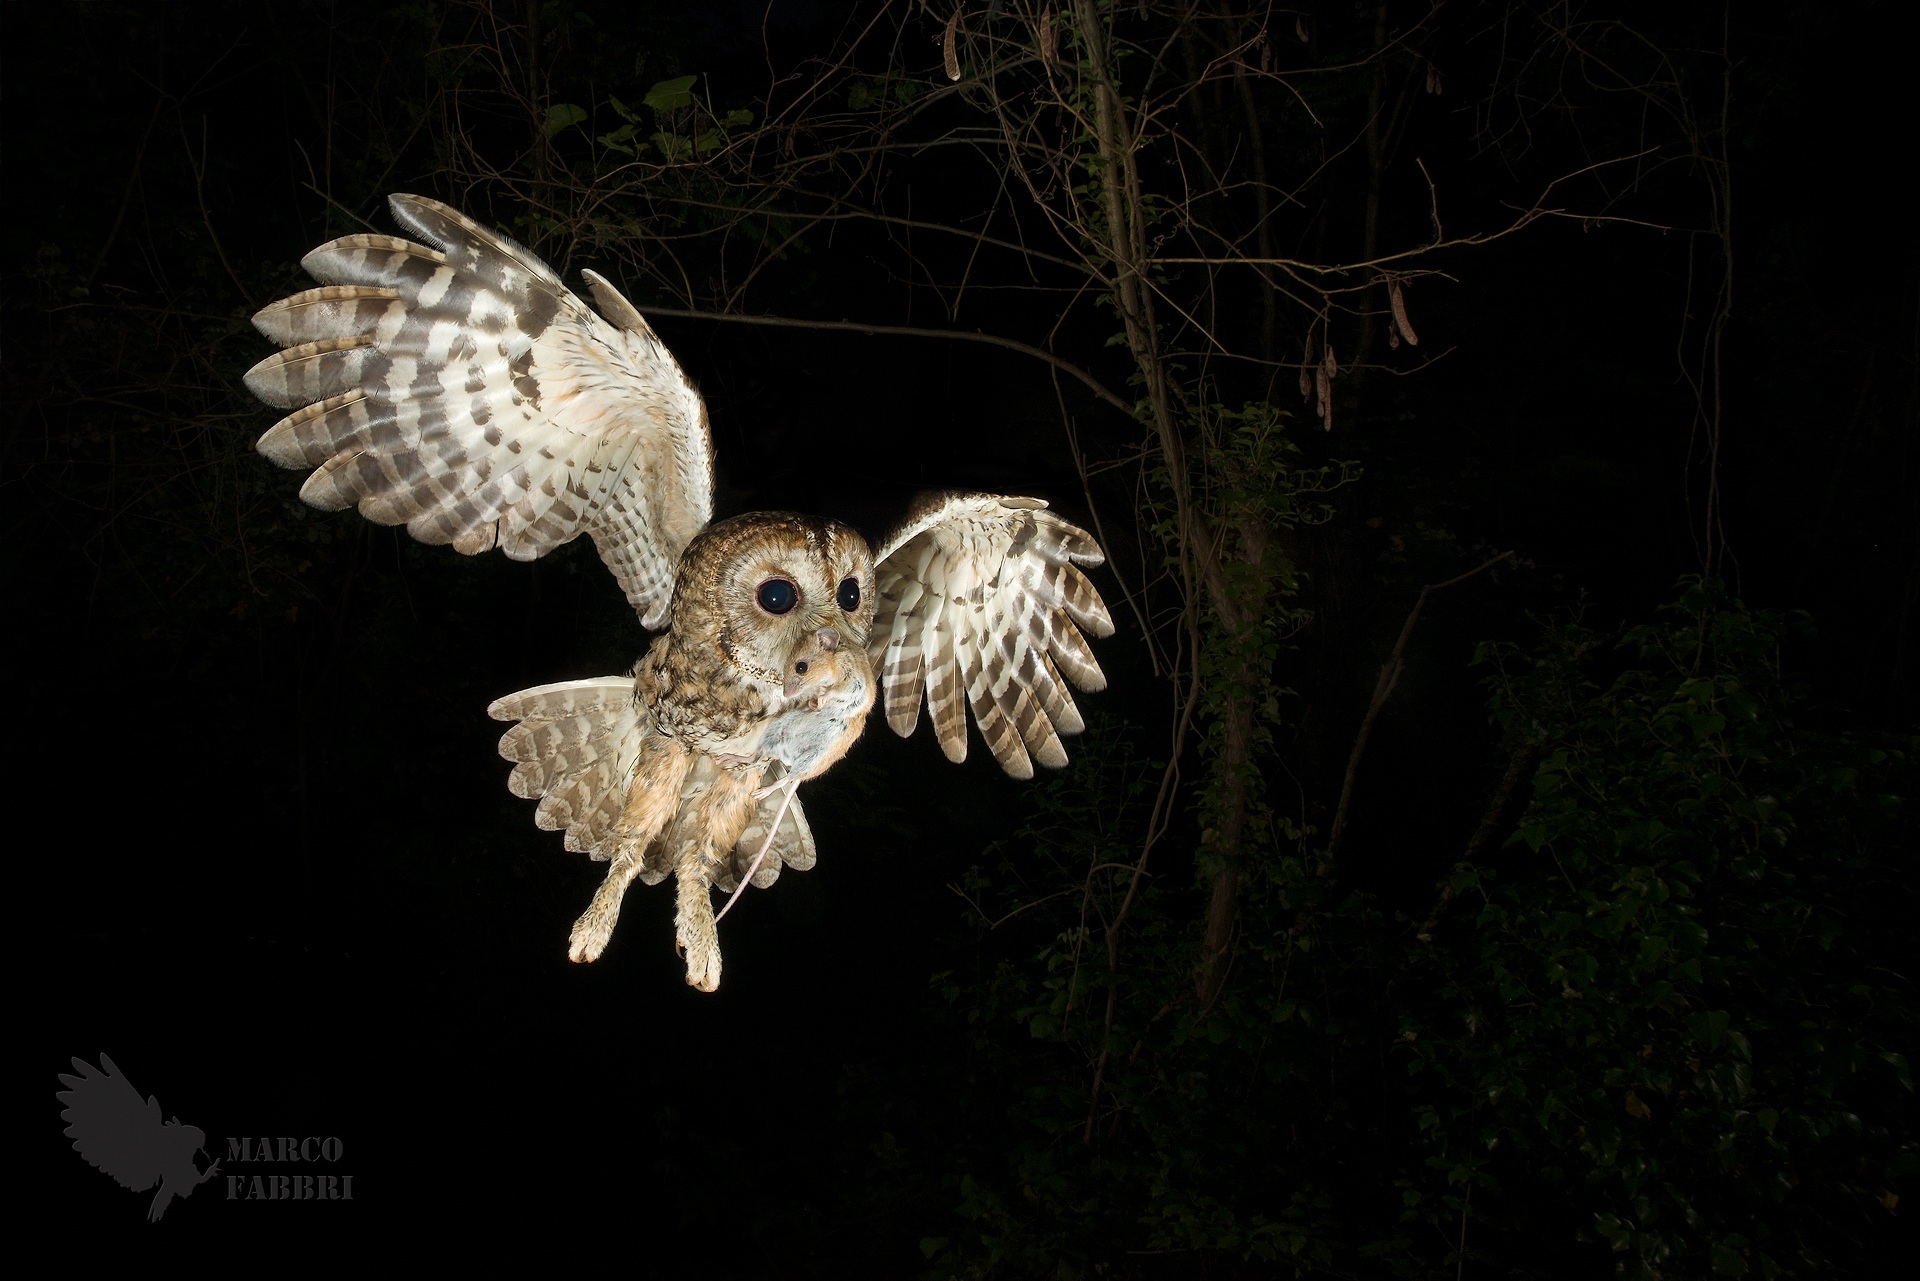 Tawny owl with prey...